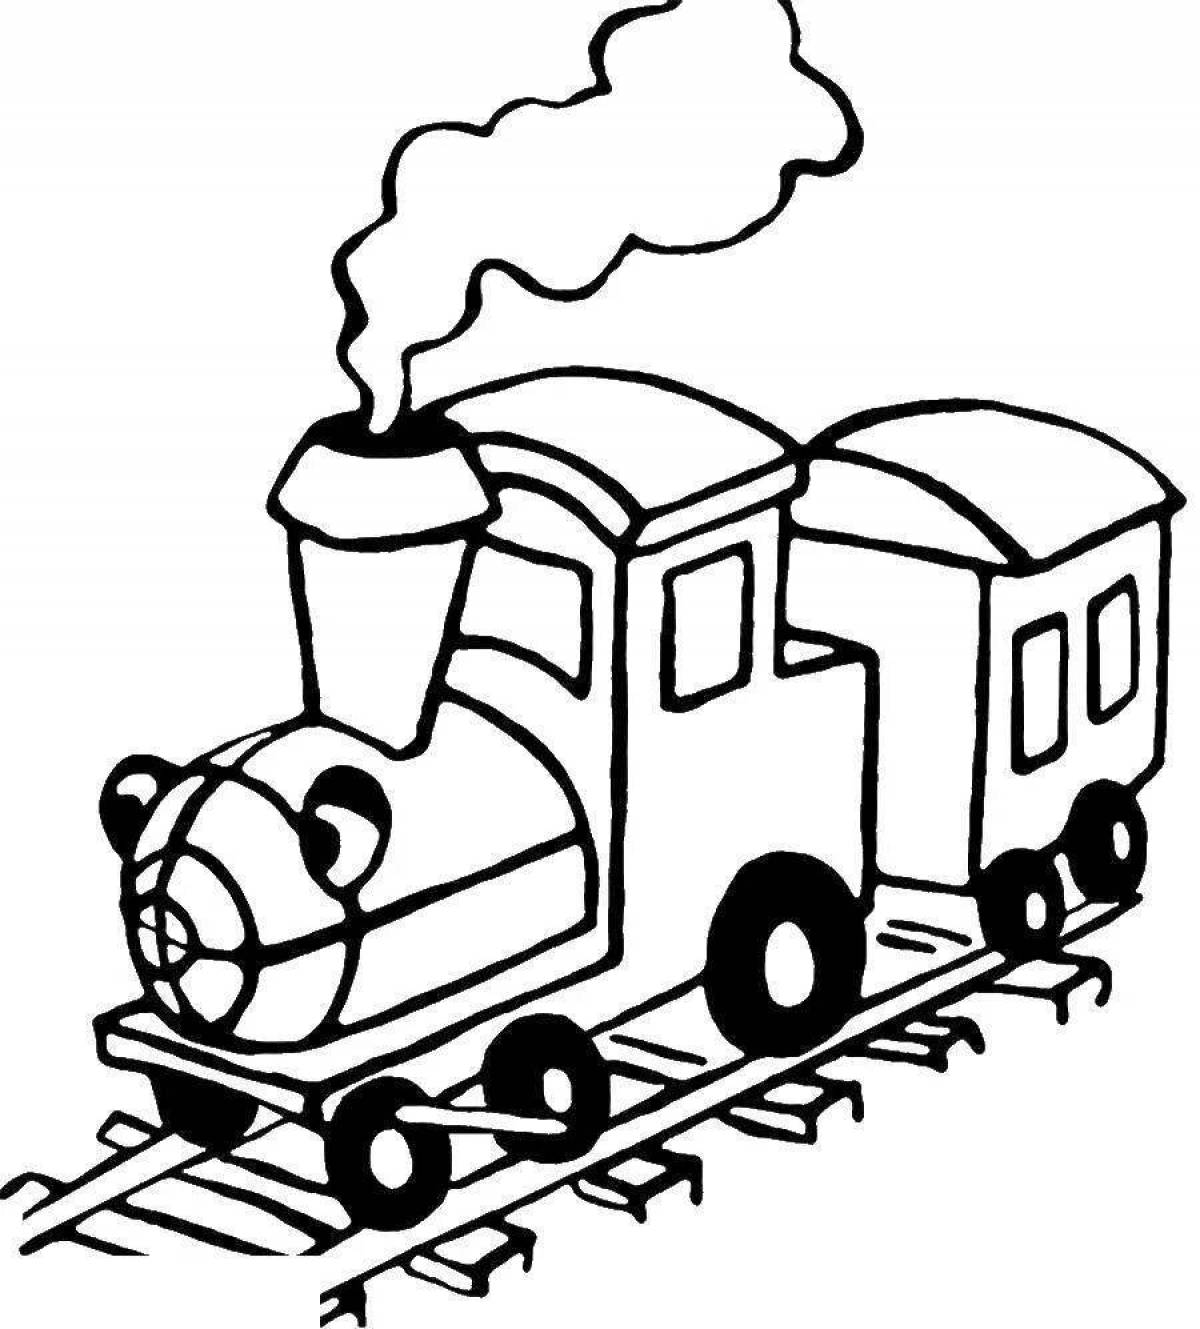 Fun drawing of a train